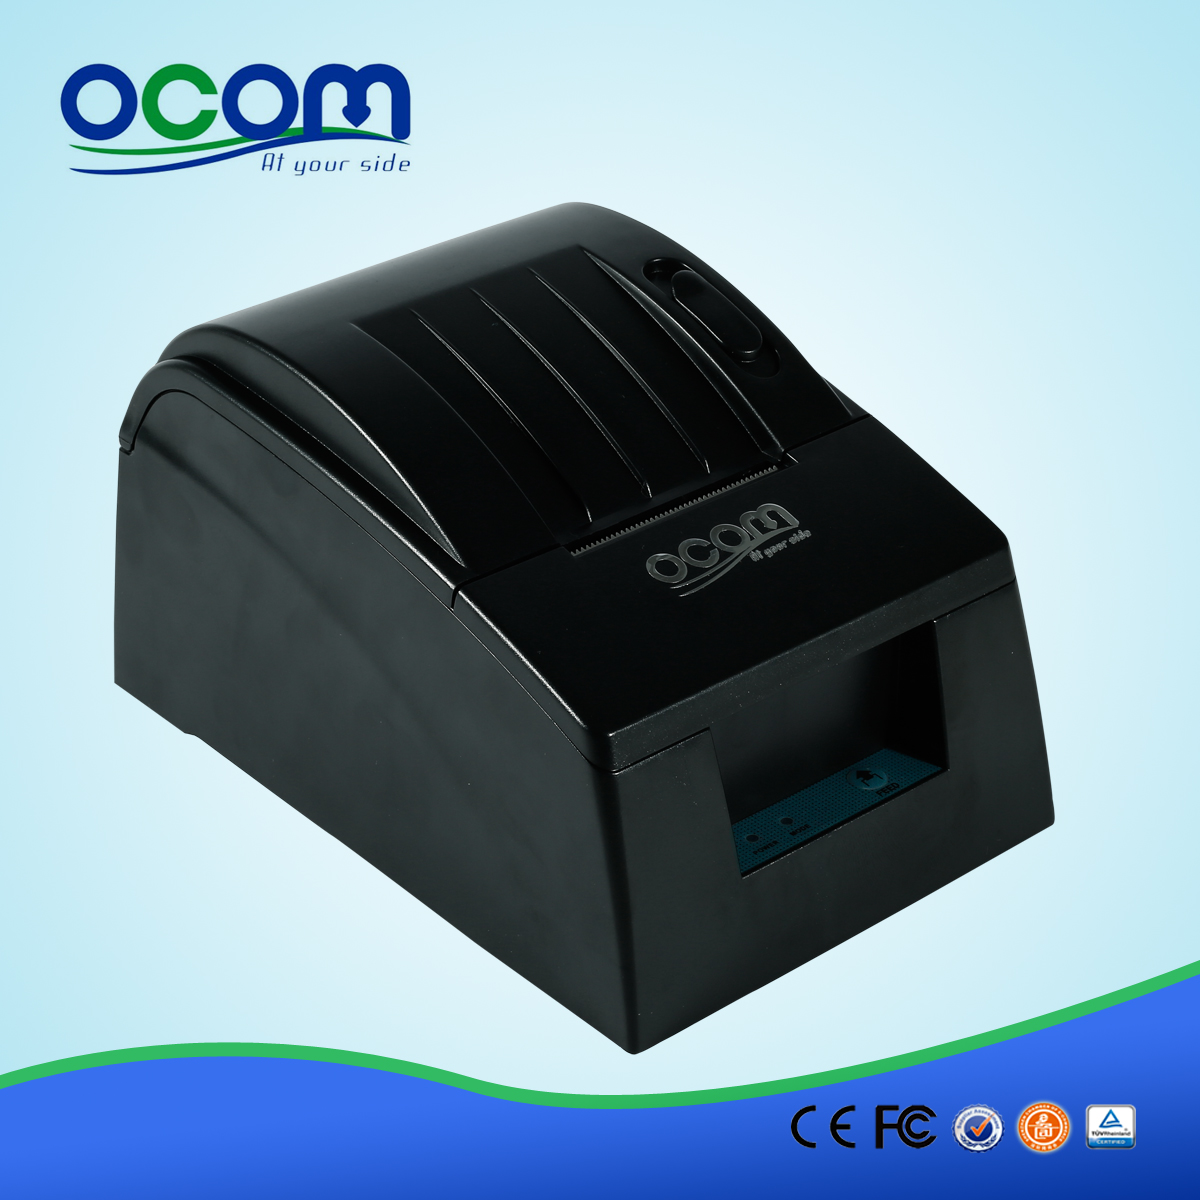 2 pouces Pos Thermal Receipt Printer OCPP-585